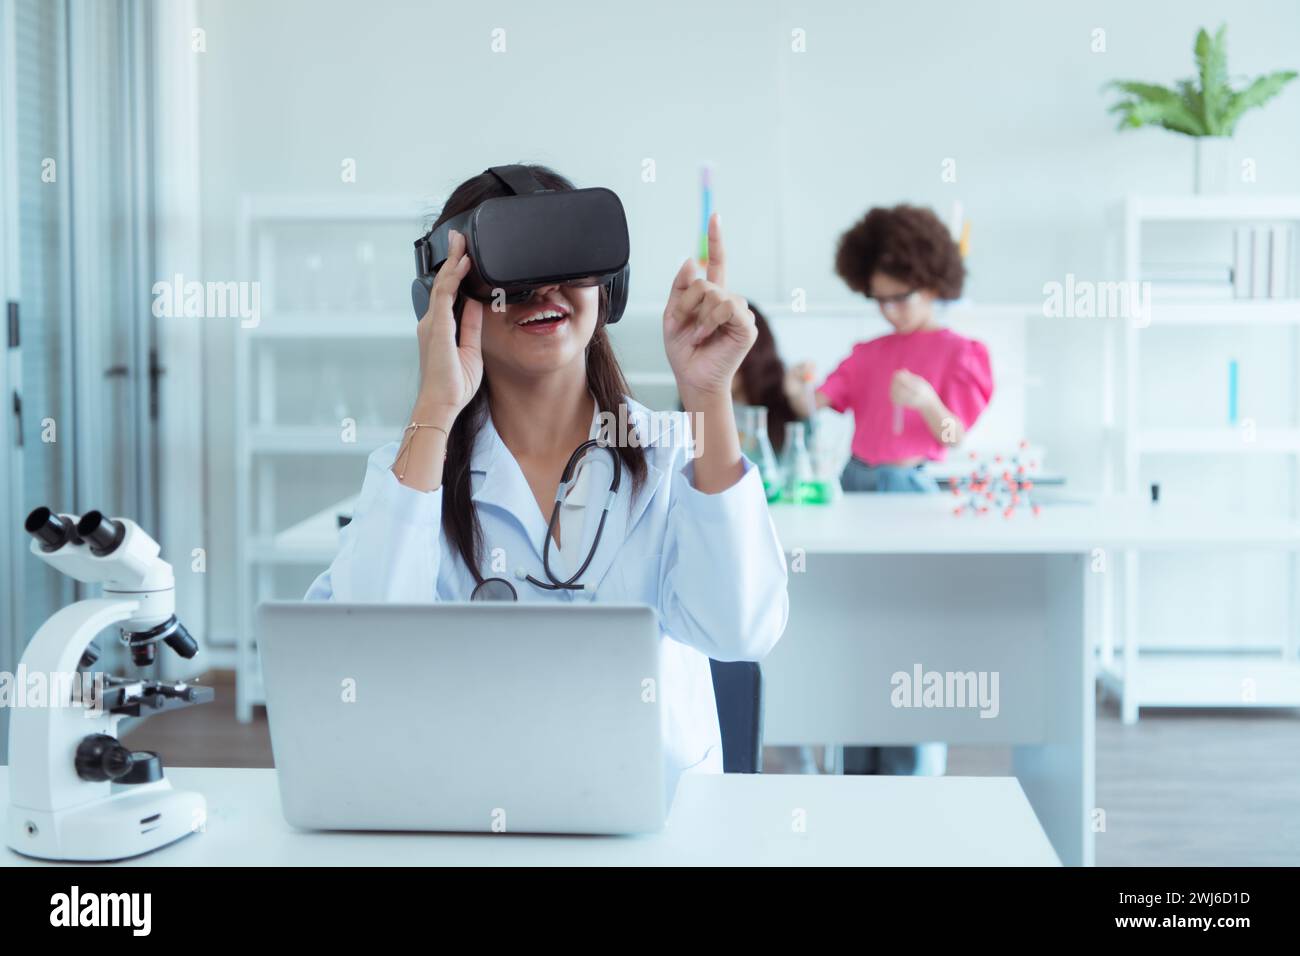 Jeune scientifique utilisant un casque de réalité virtuelle pendant que des collègues travaillent en arrière-plan au laboratoire Banque D'Images